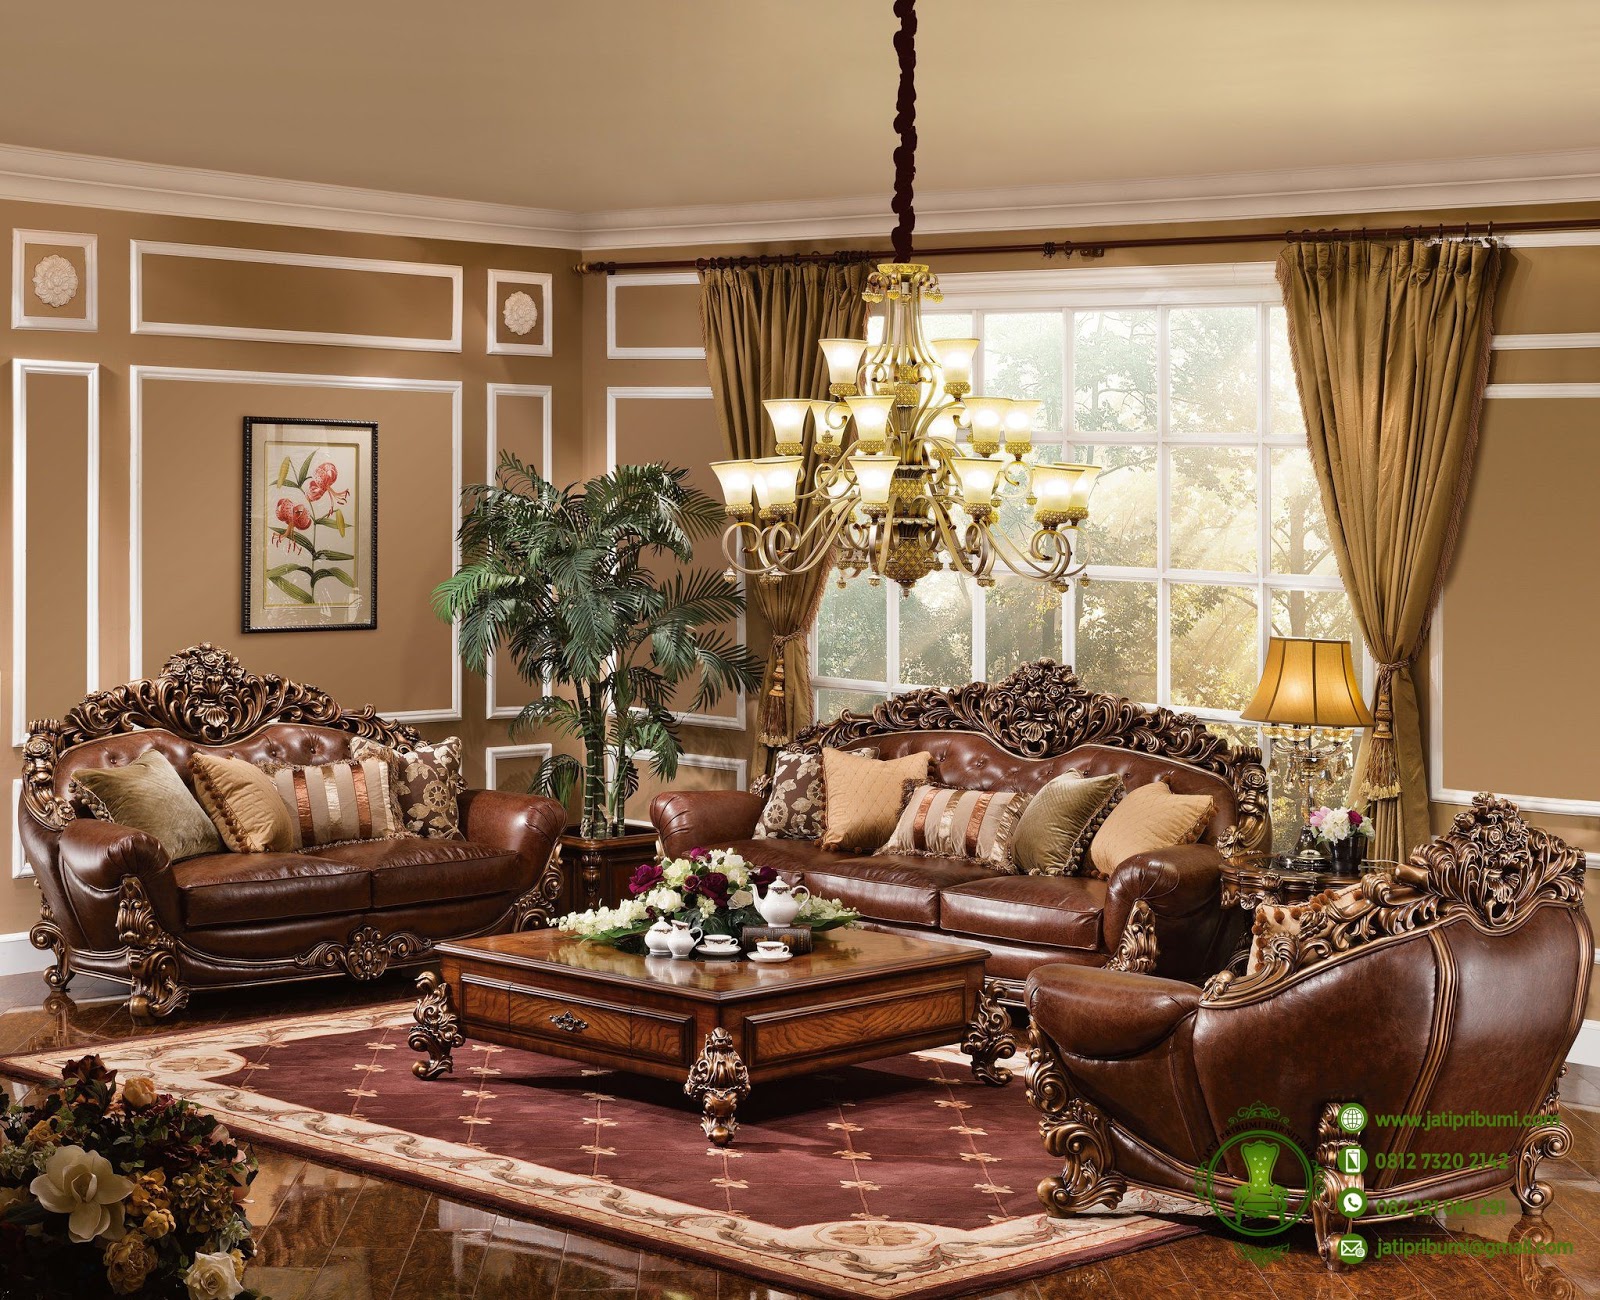 Desain Interior Furniture Jepara Tips Mendesain Ruang Tamu Klasik